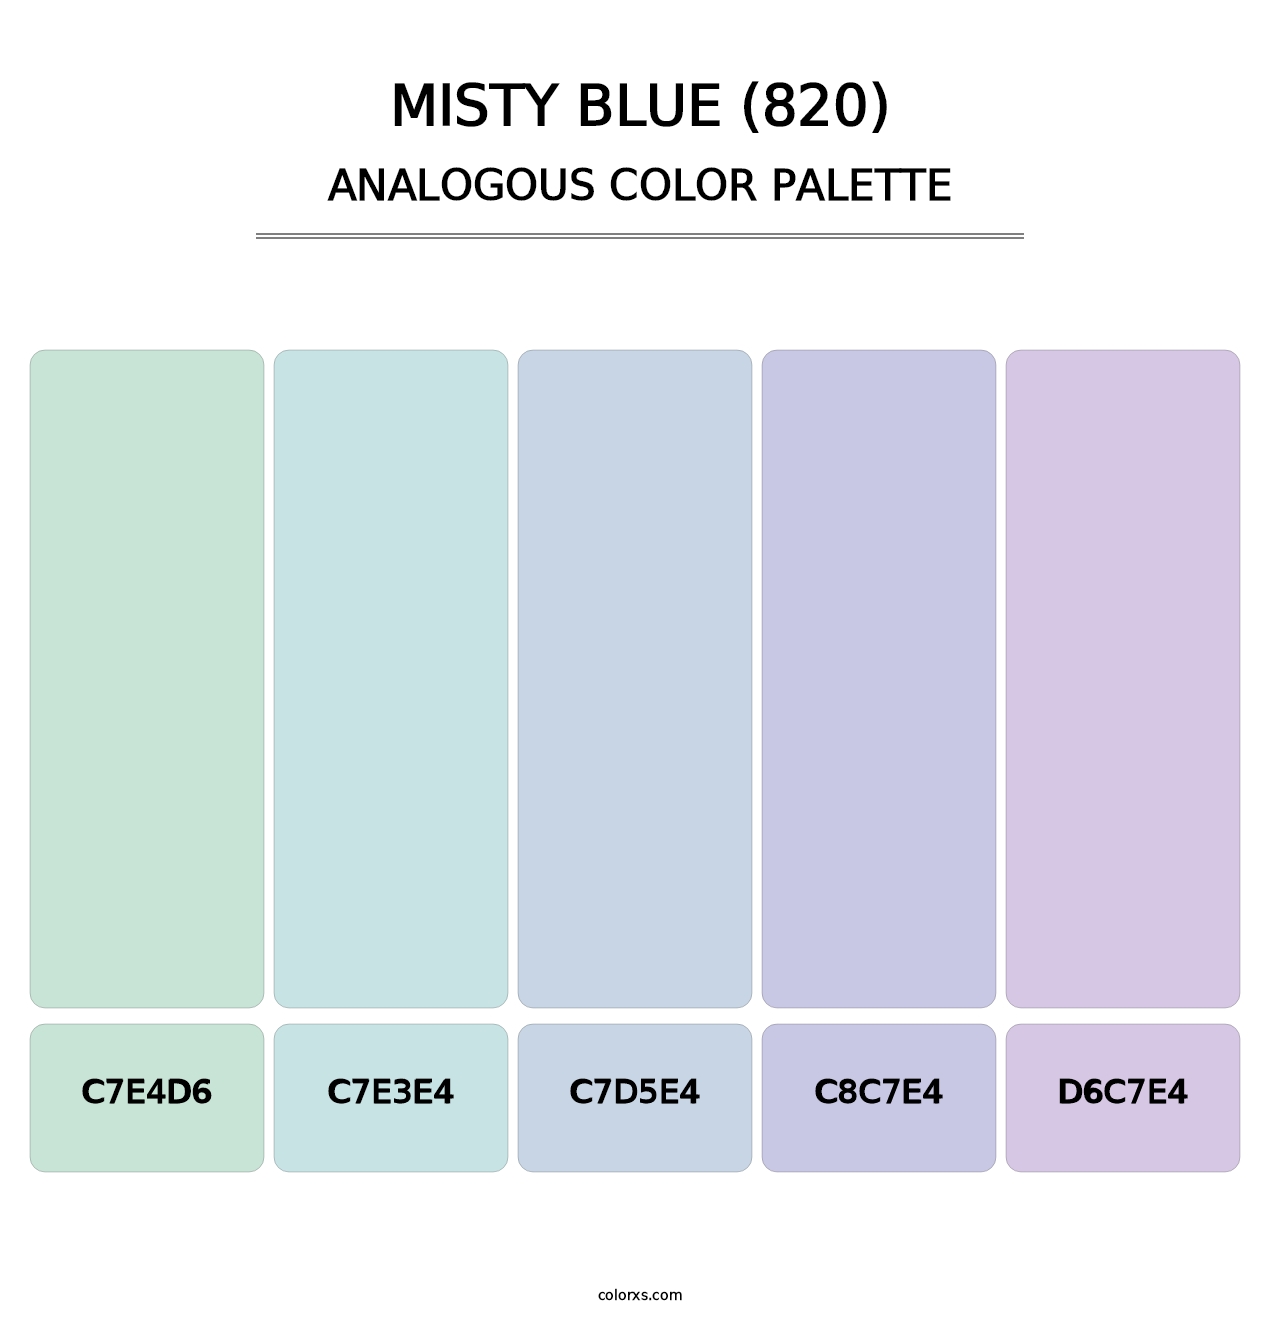 Misty Blue (820) - Analogous Color Palette